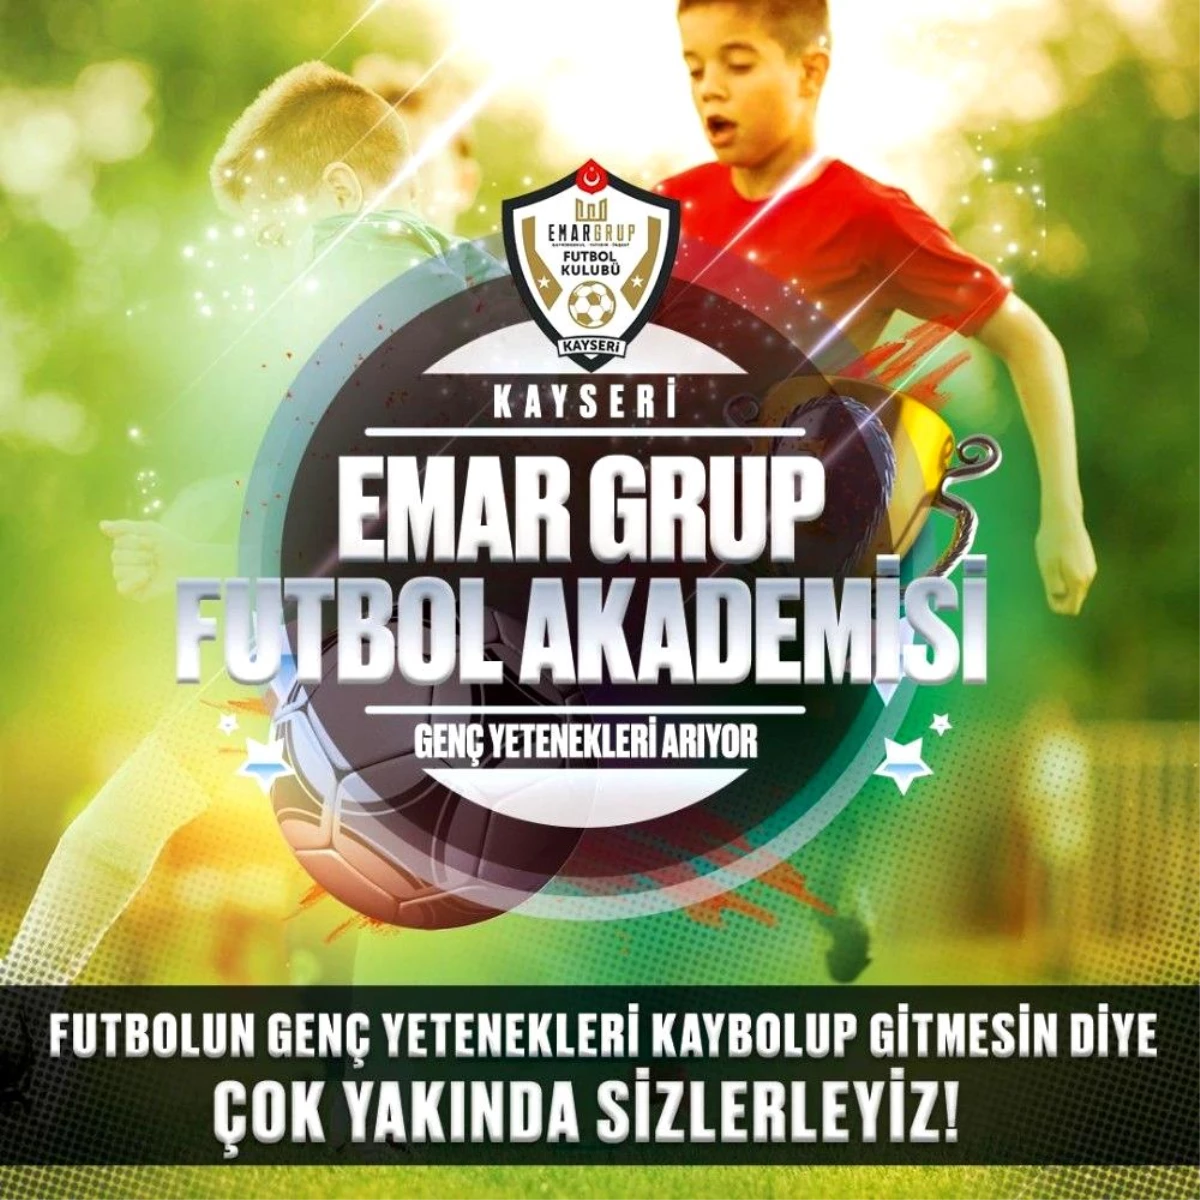 Kayseri Emar Grup FK genç yetenekleri arıyor